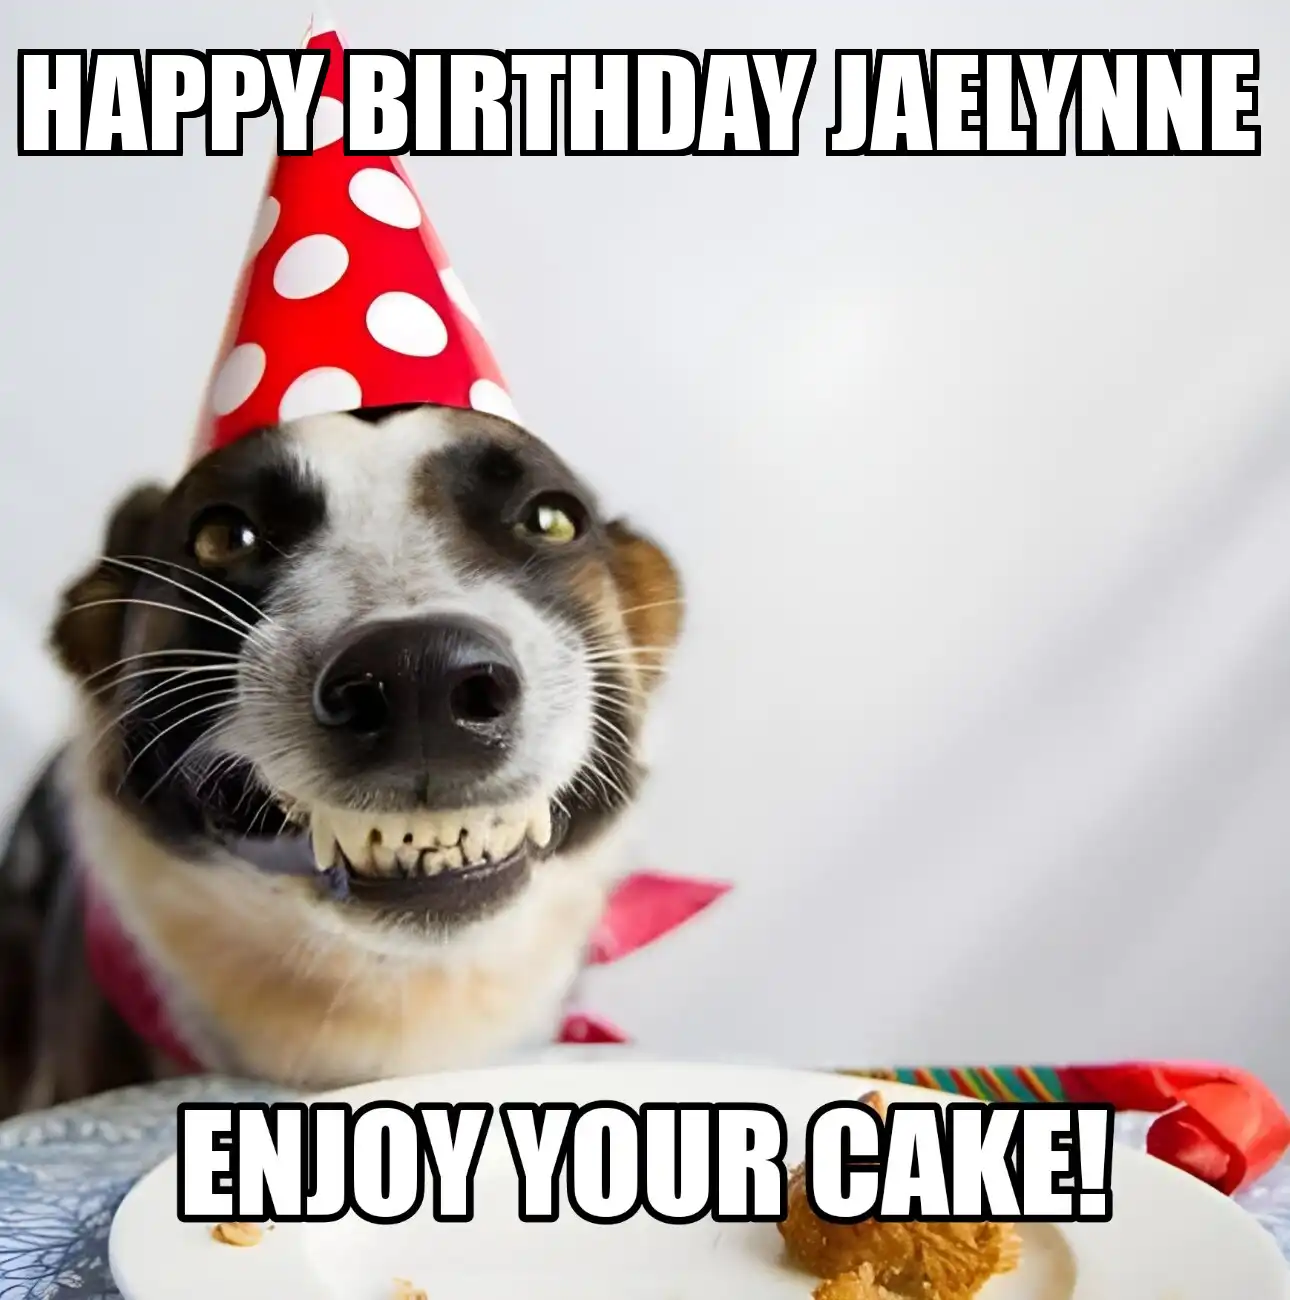 Happy Birthday Jaelynne Enjoy Your Cake Dog Meme